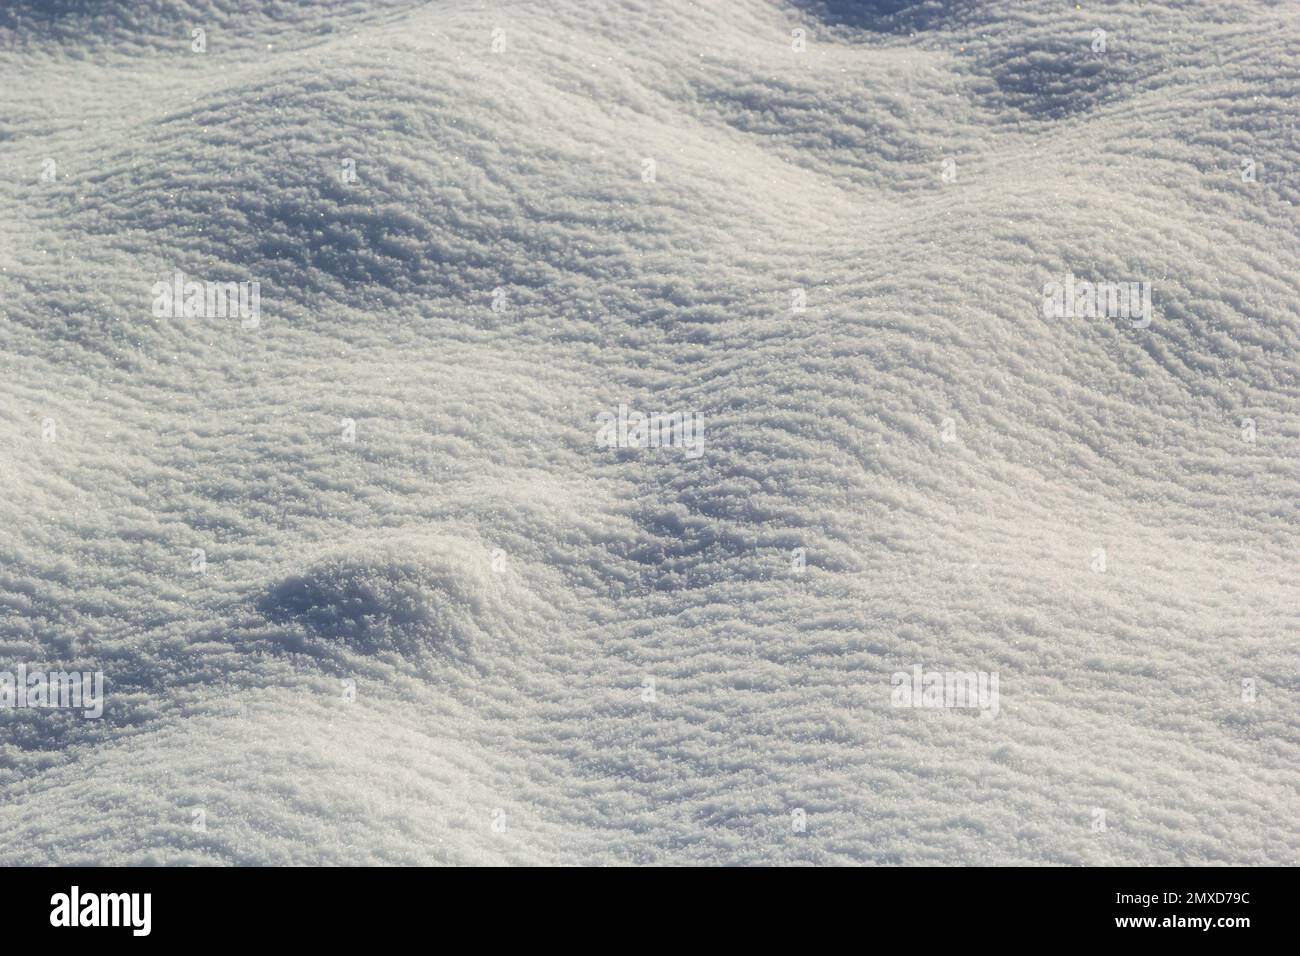 Hintergrund Der frische Schnee Textur in Blautönen. Stockfoto